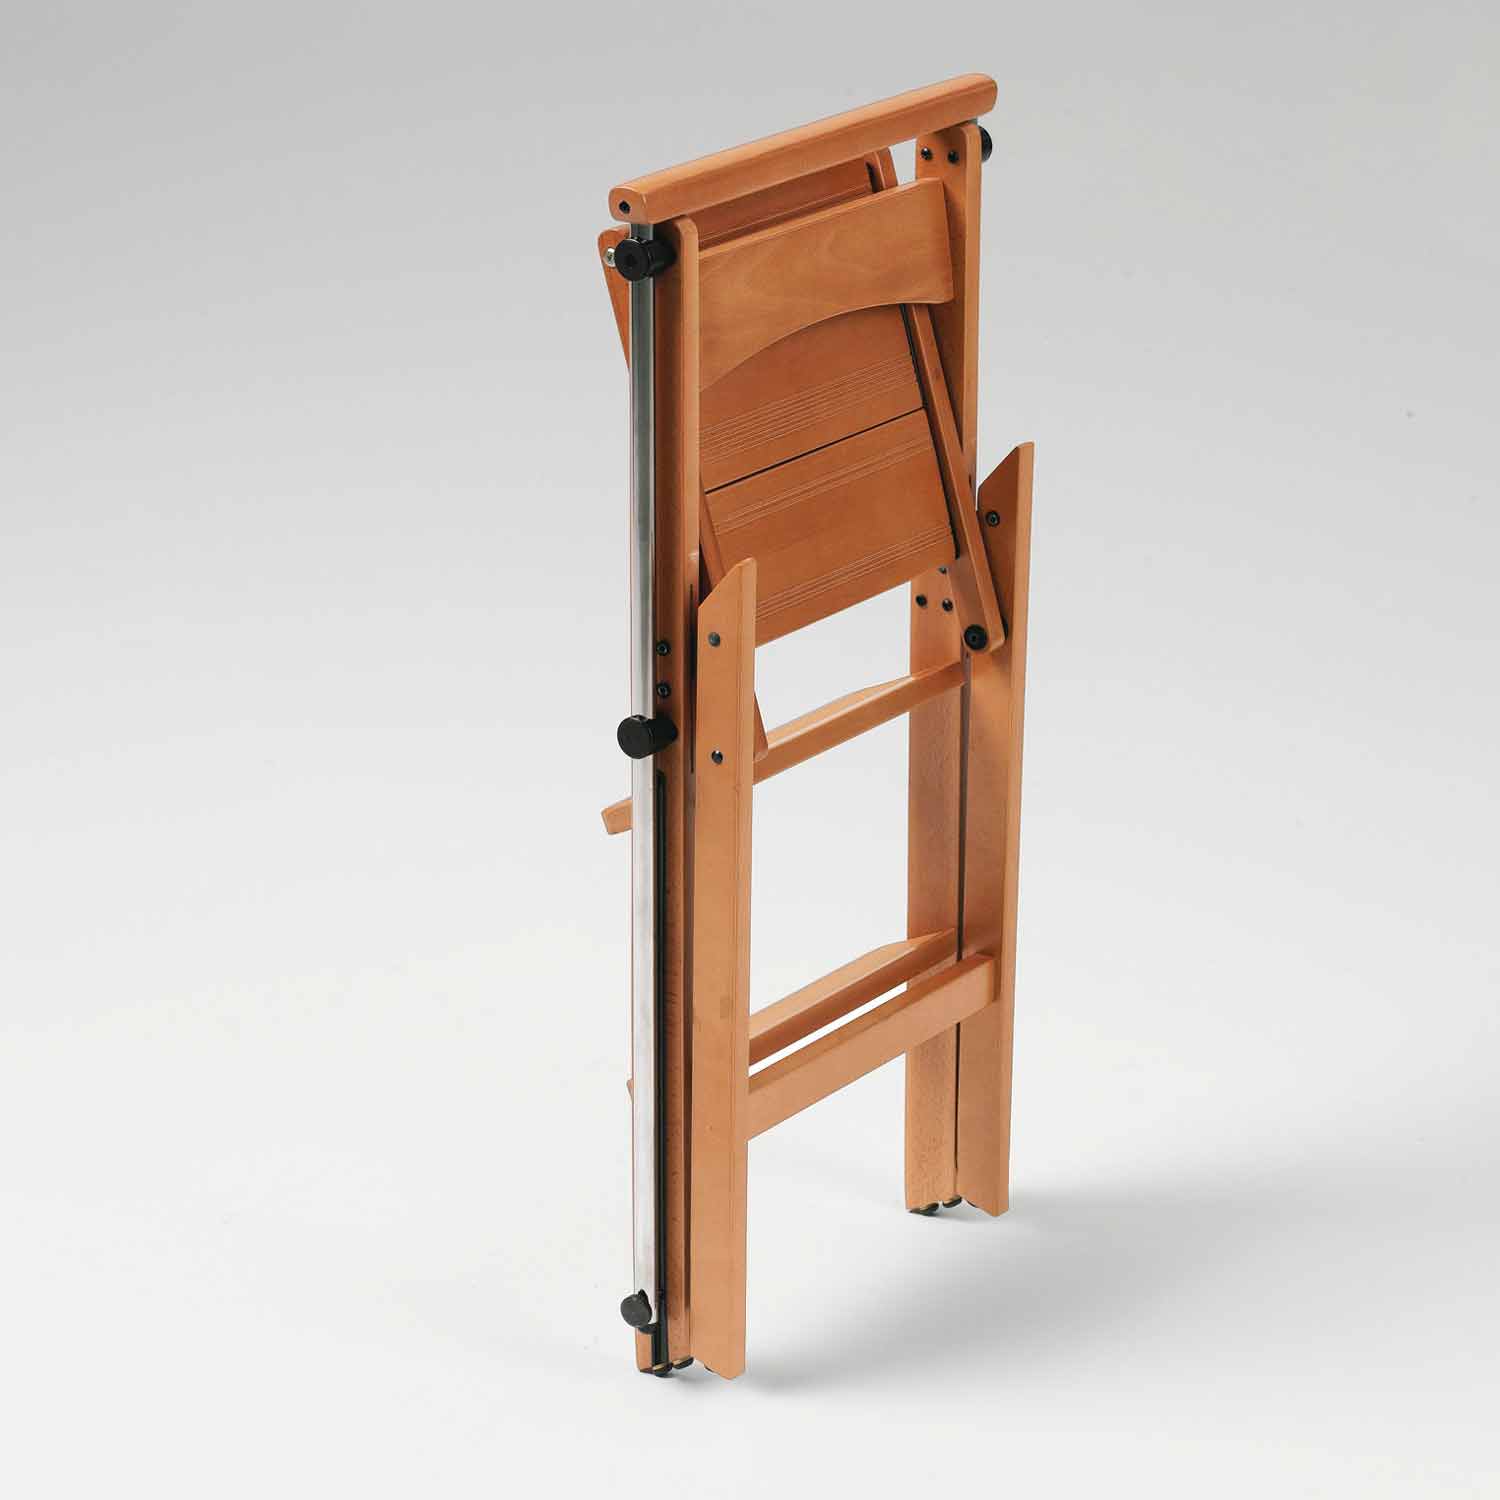 ELETTA - Leiter, Trittleiter, Trittleiter 4 stufen, umwandelbarer Stuhl, mit Sicherheitssystem, kirschfarben, 4